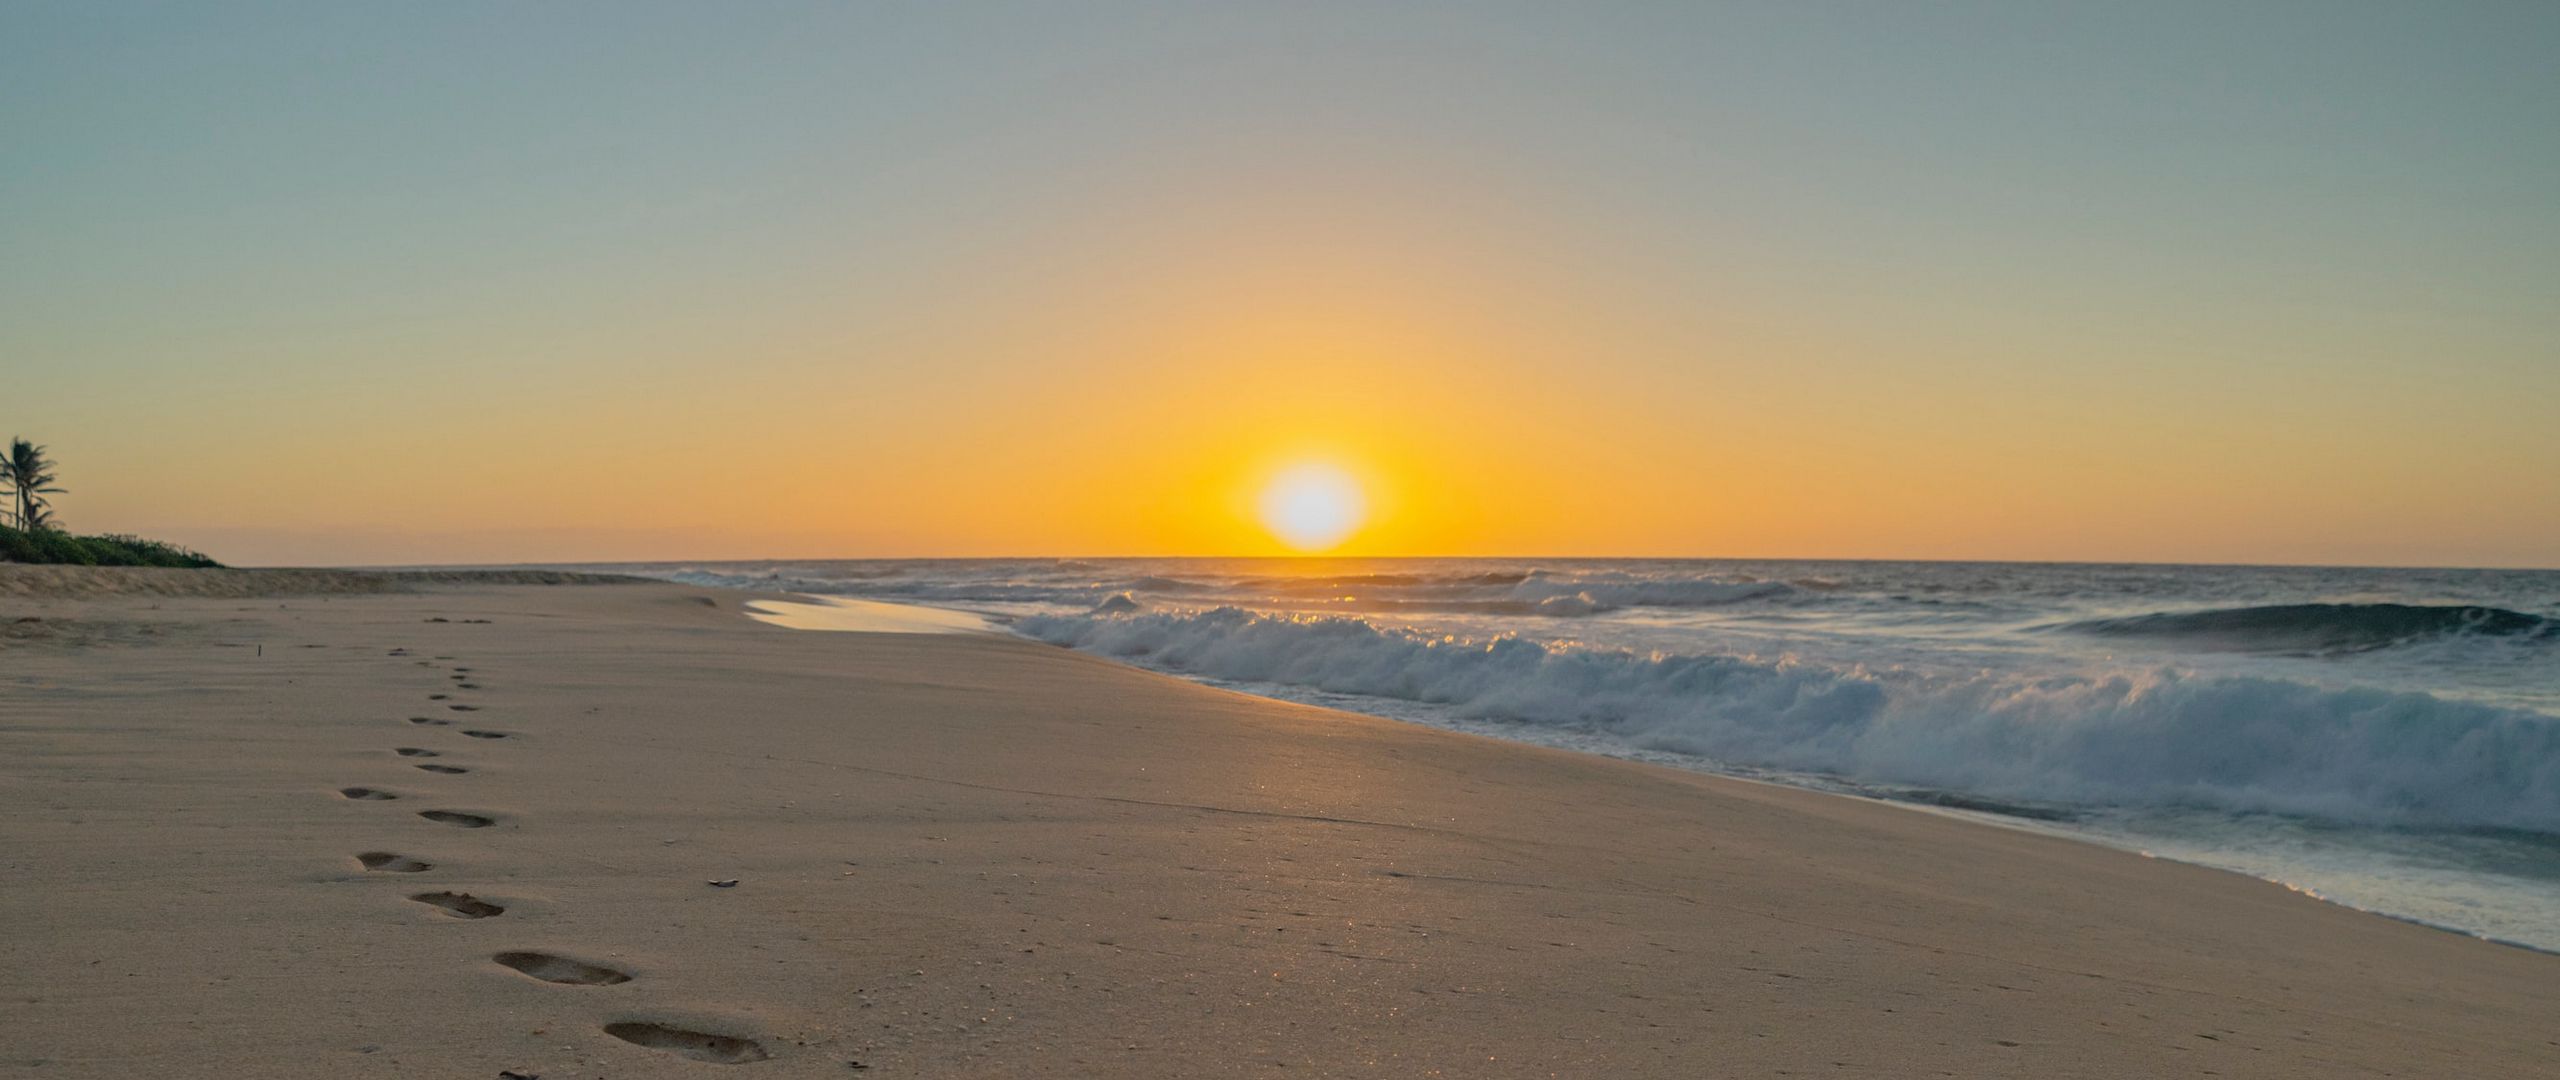 Download wallpaper 2560x1080 beach sunset footprints sand dual